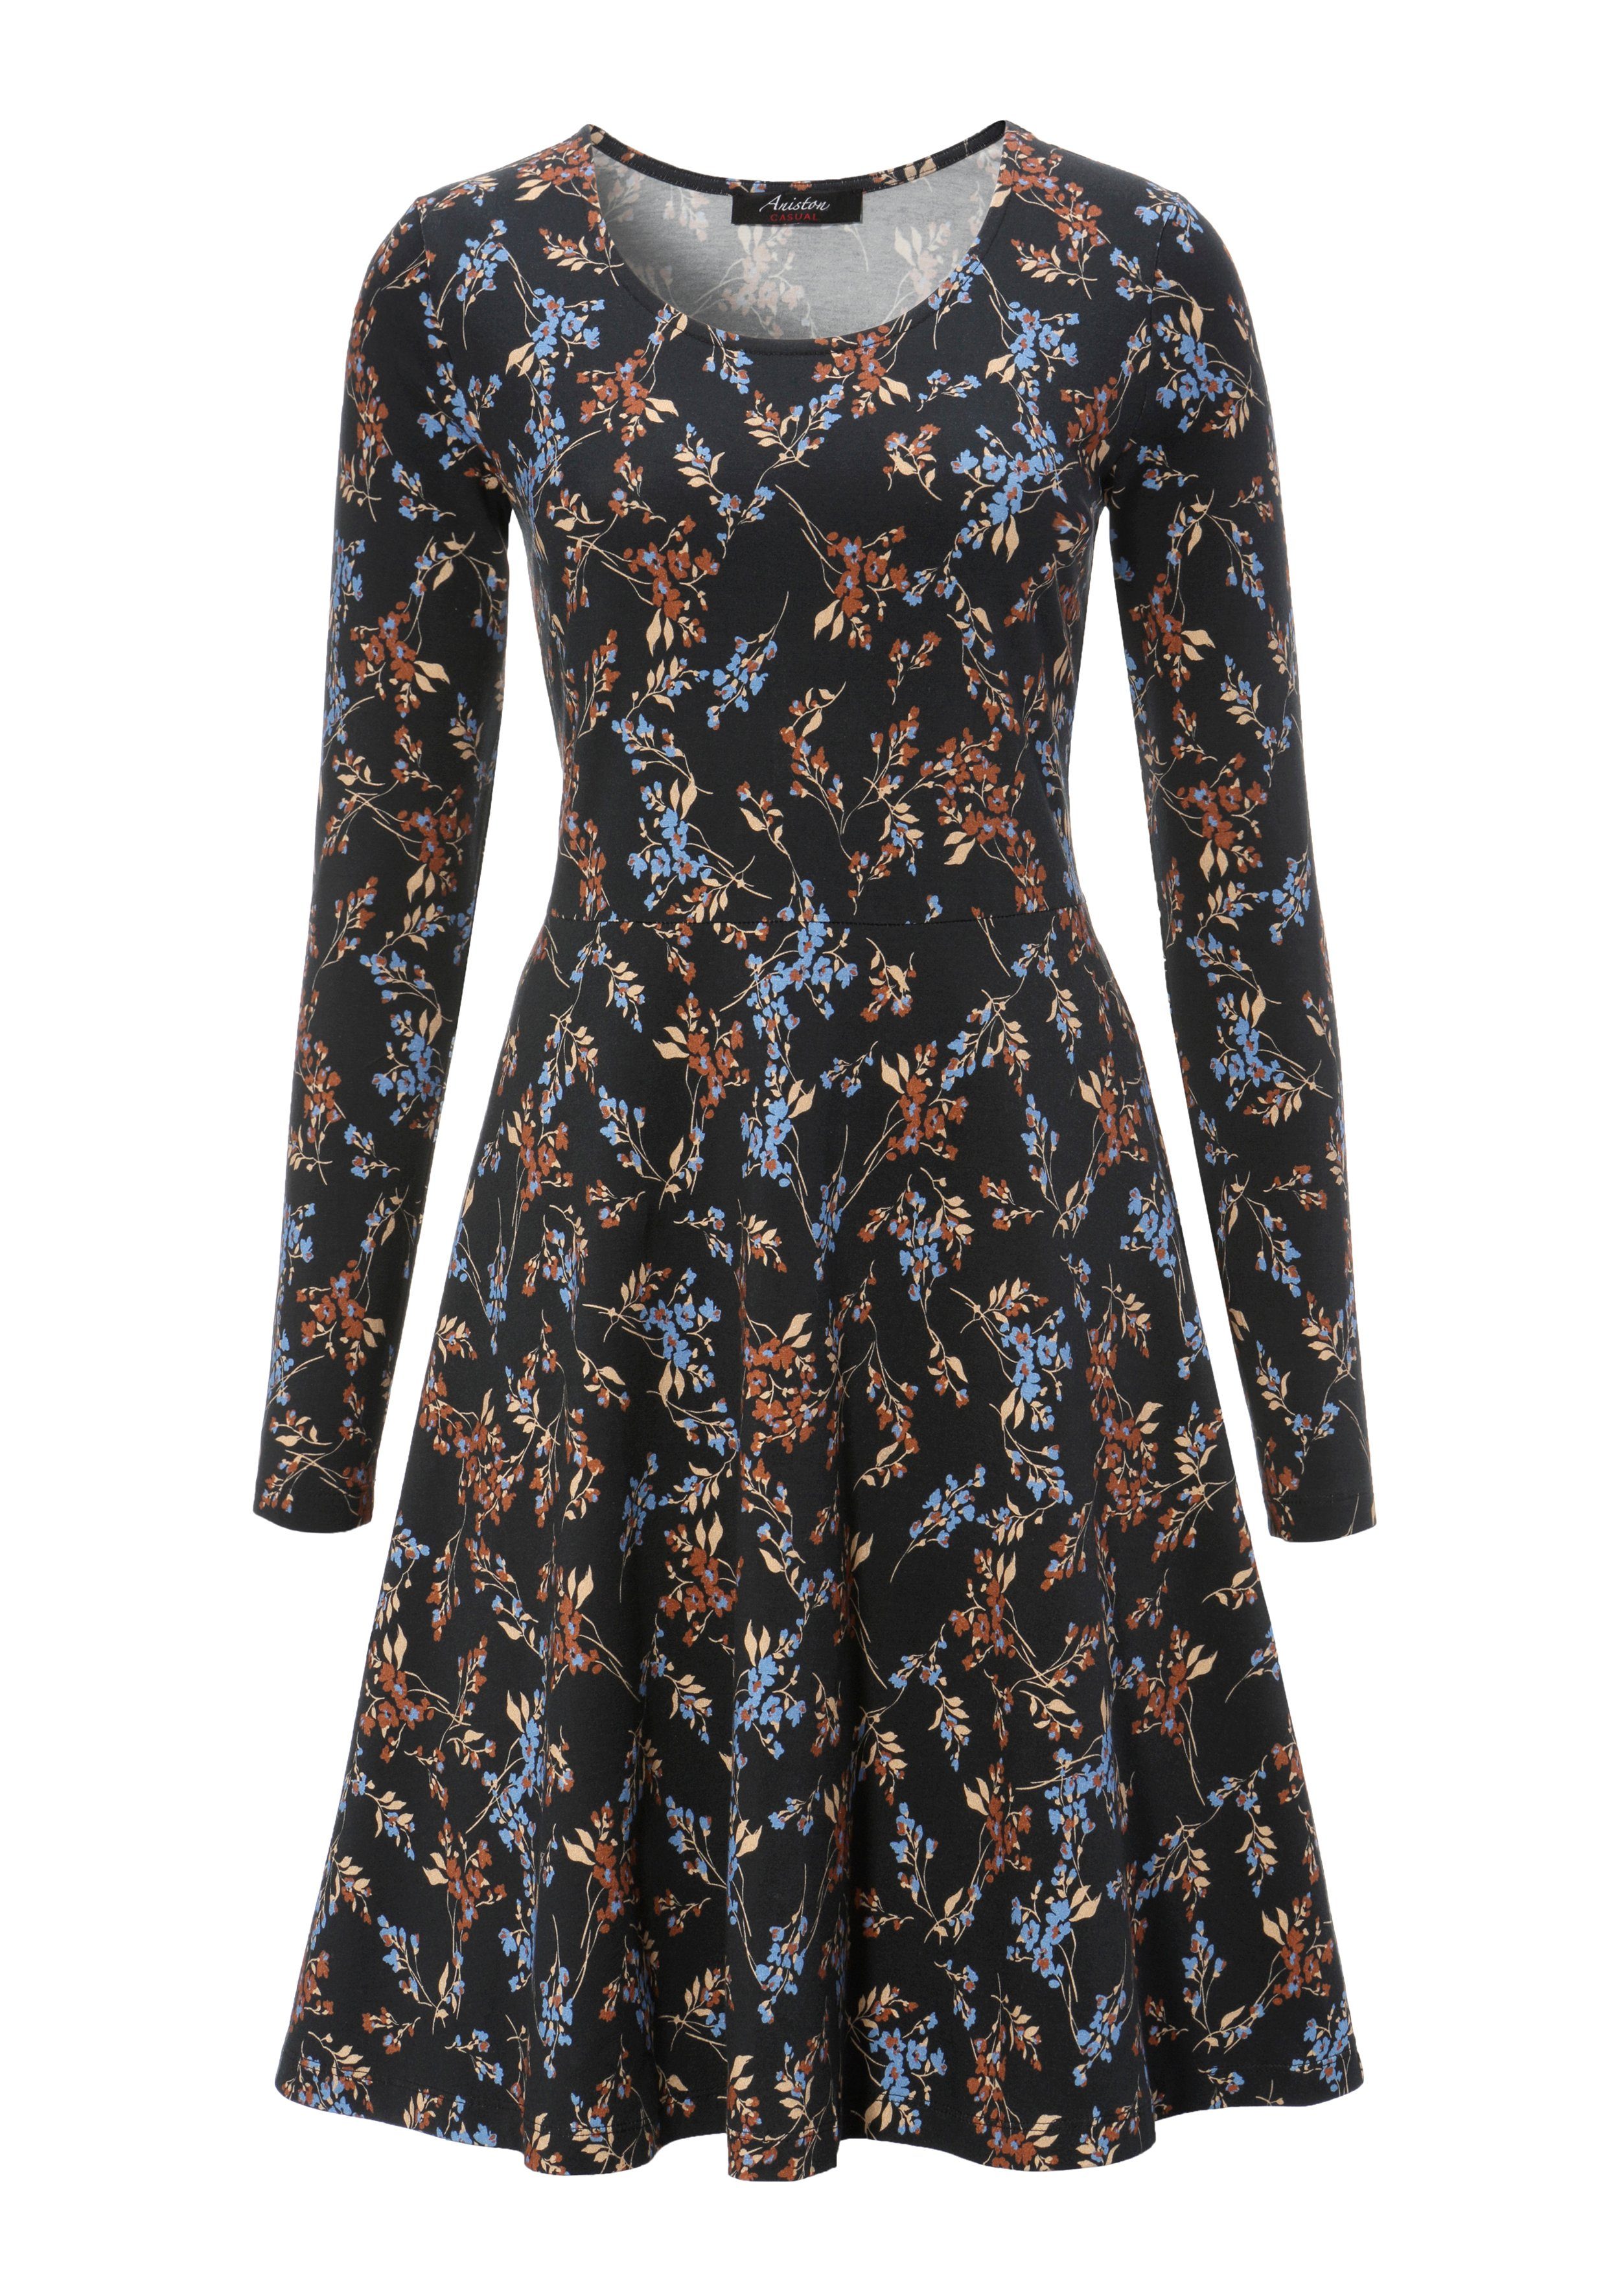 Aniston CASUAL Blumendruck mit Jerseykleid schwarz-braun-jeansblau-sand harmonischem